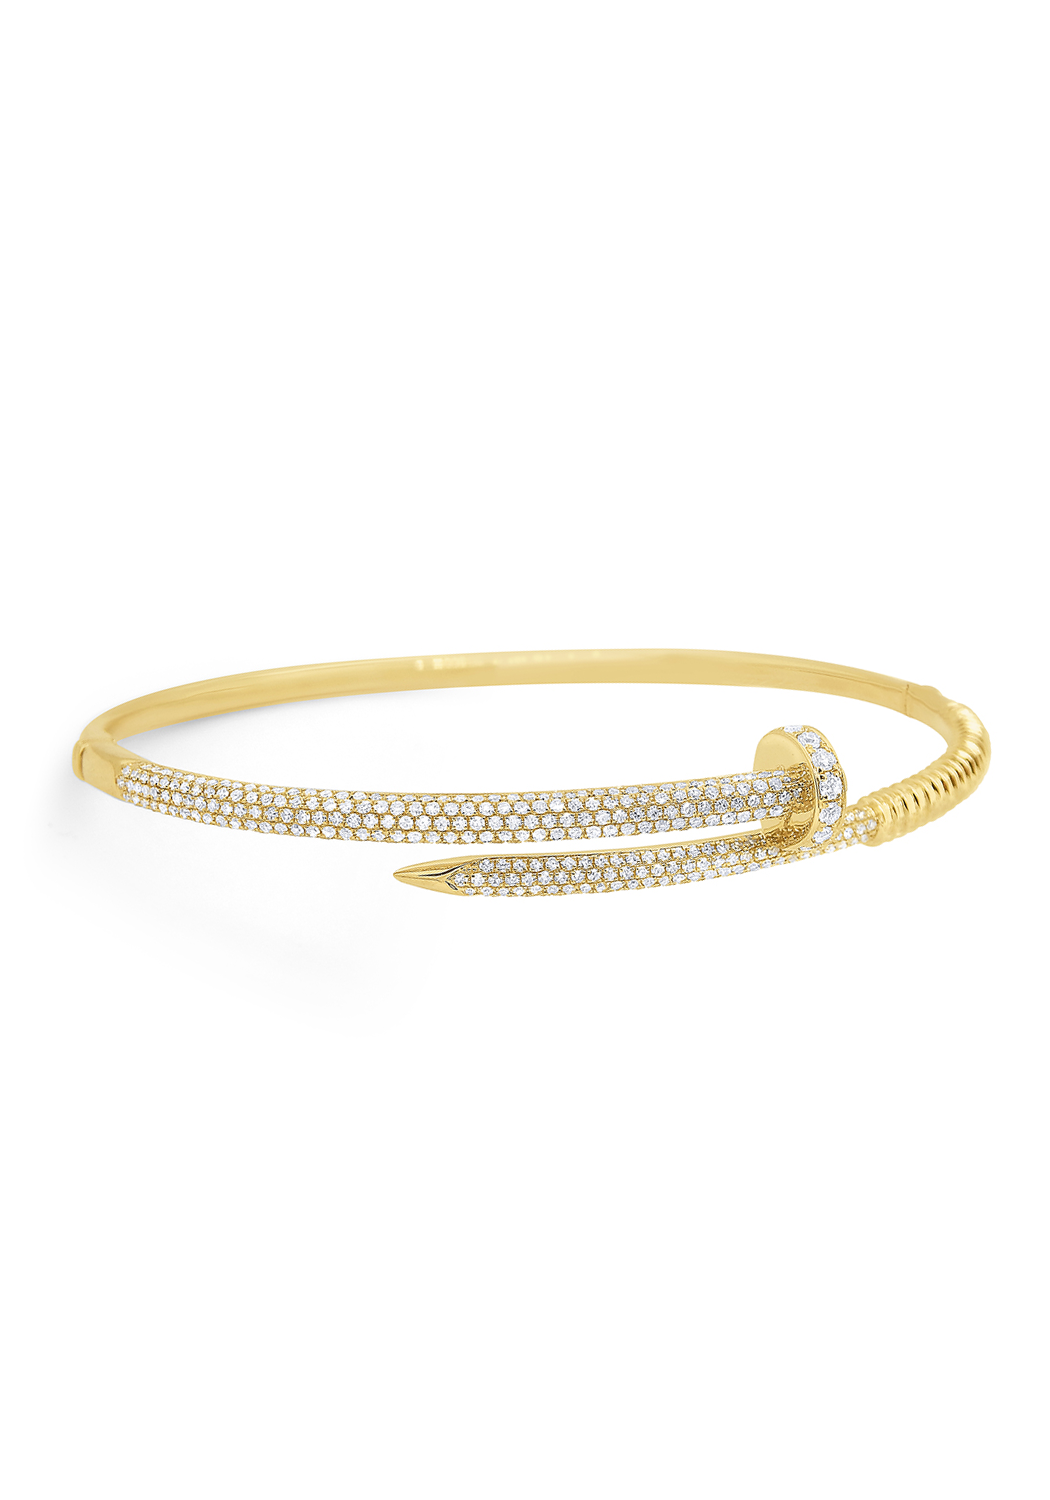 Gold Bangle Bracelet, a timeless accessory – Onpost